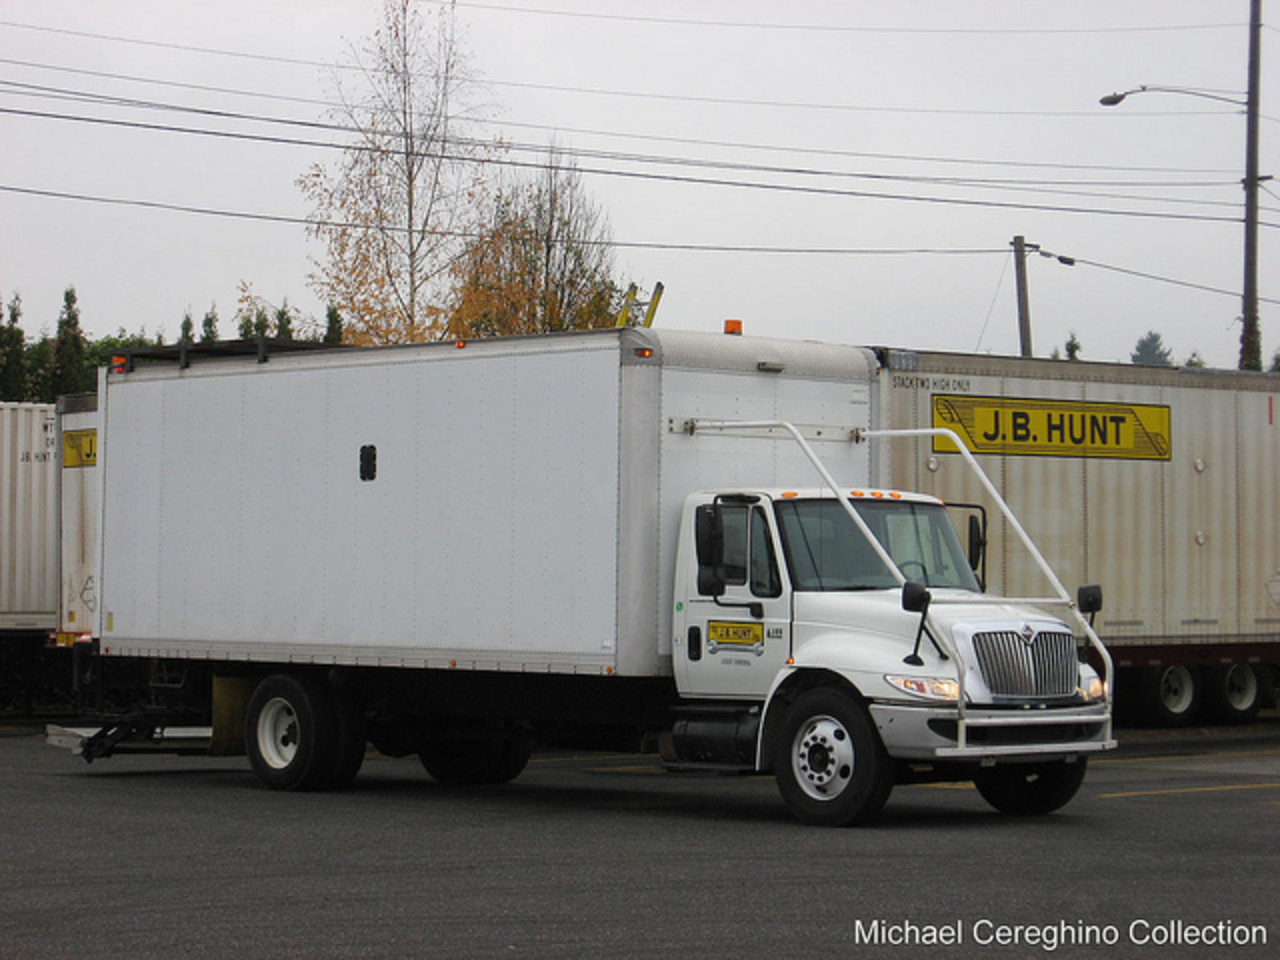 J.B. Hunt International 4300 service truck | Flickr - Photo Sharing!